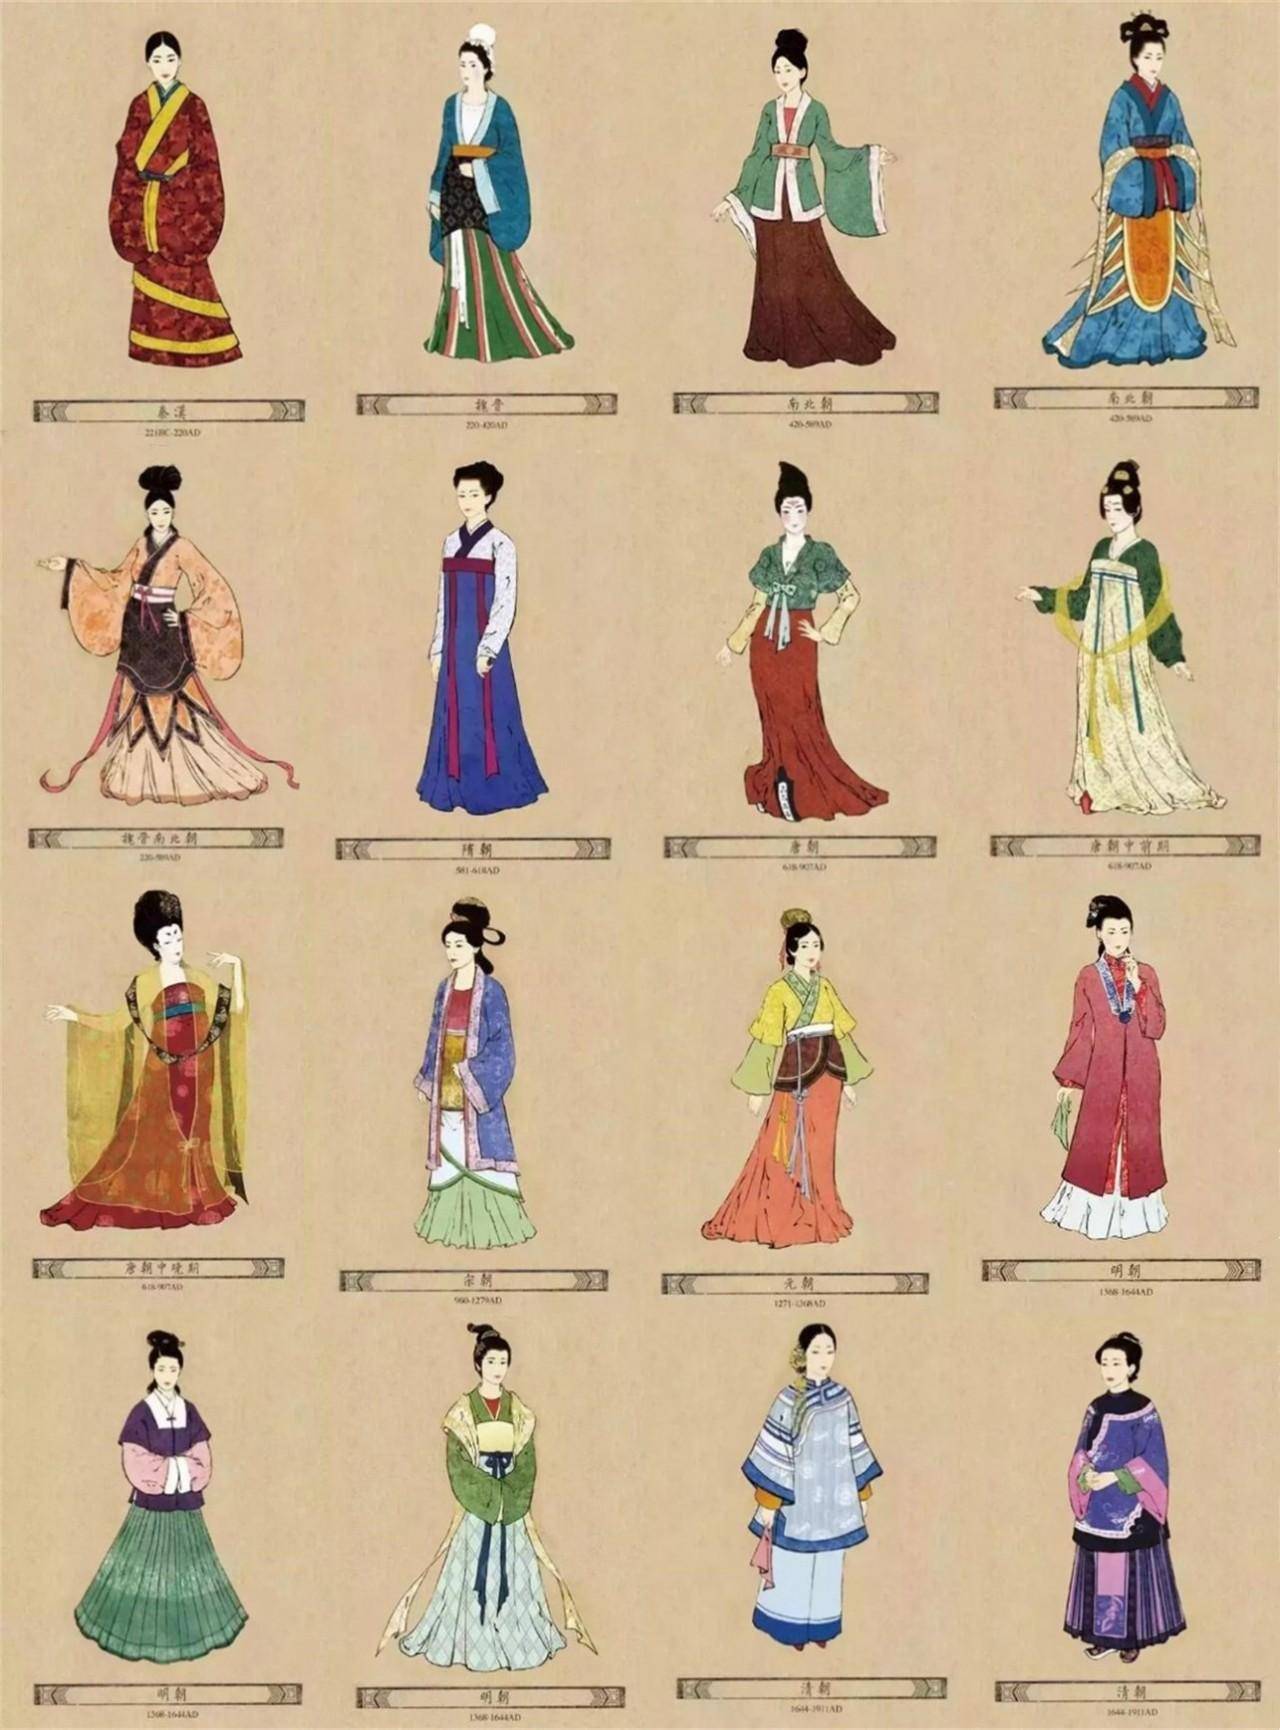 半圆 版权归属原作者汉服,也被叫作汉装,华服,以下是女性服饰演变史